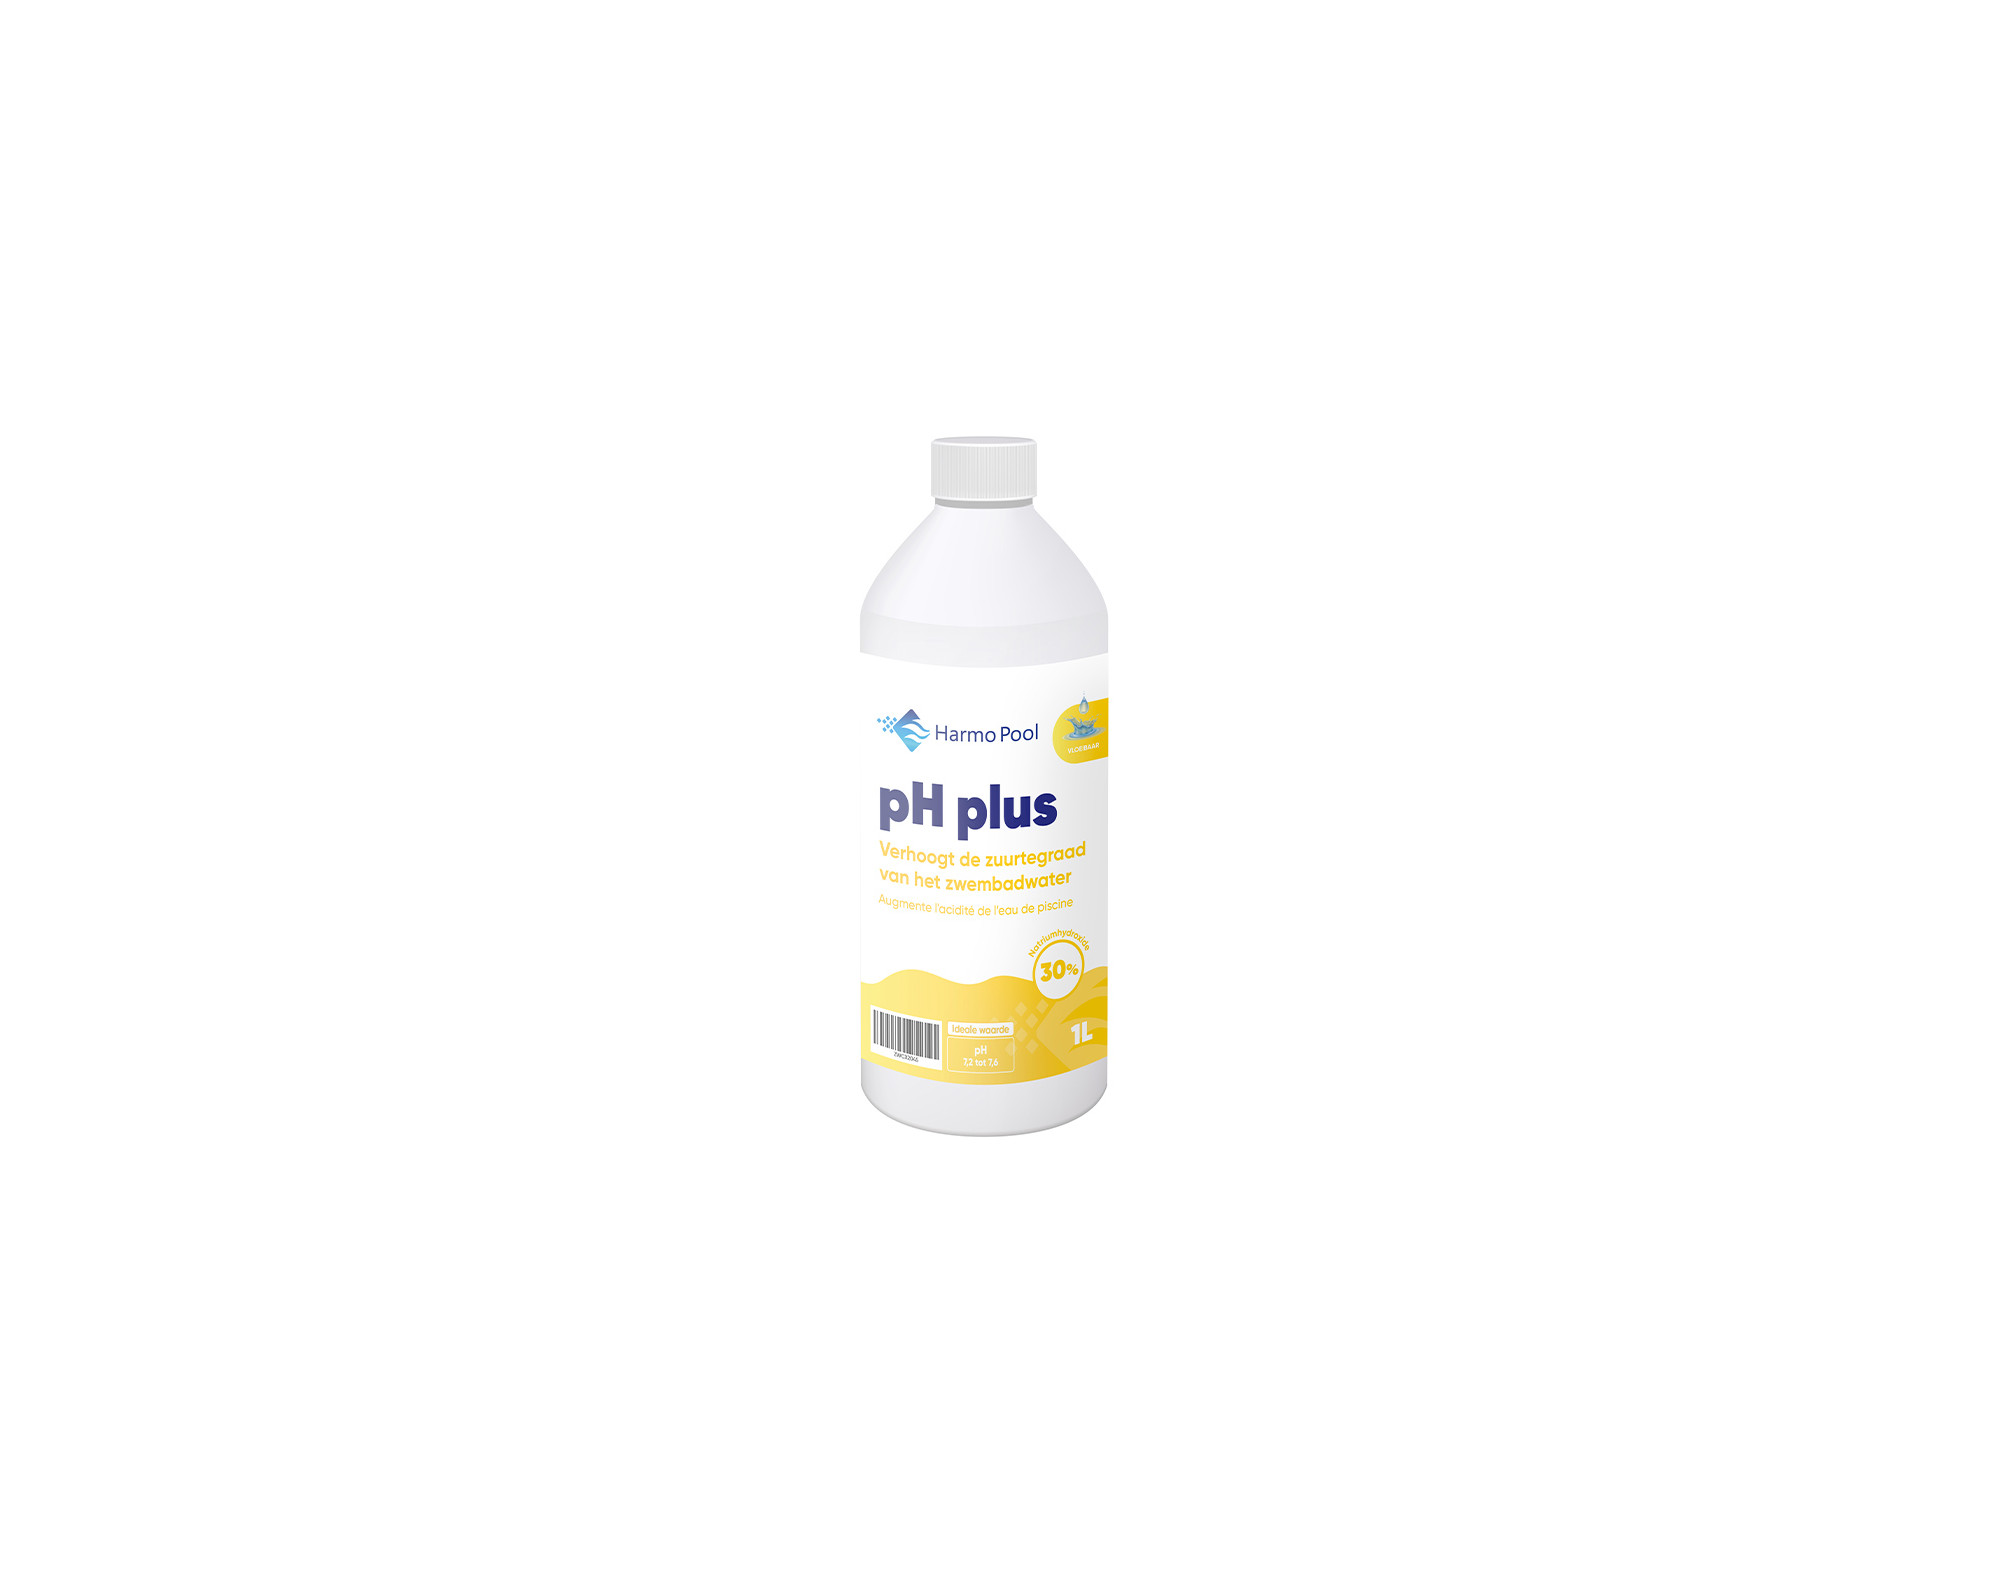 Vloeibare pH plus 14.9% (1L) (wegwerp bidon)